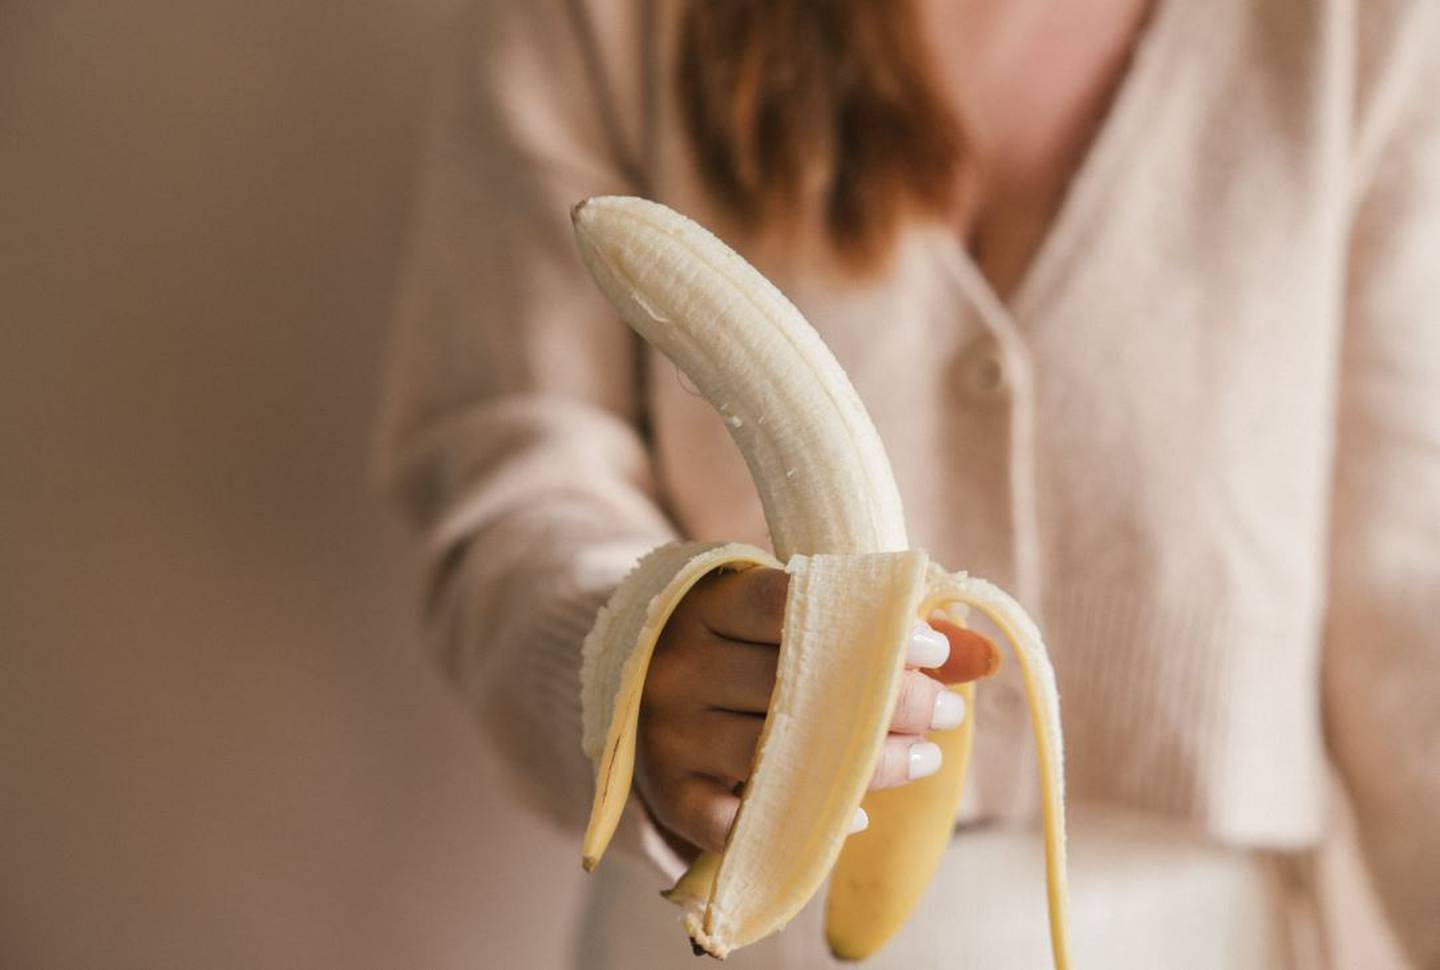 Las bananas son ricas en potasio, un electrolito que ayuda a sacar el sodio del cuerpo y reducir la hinchazón